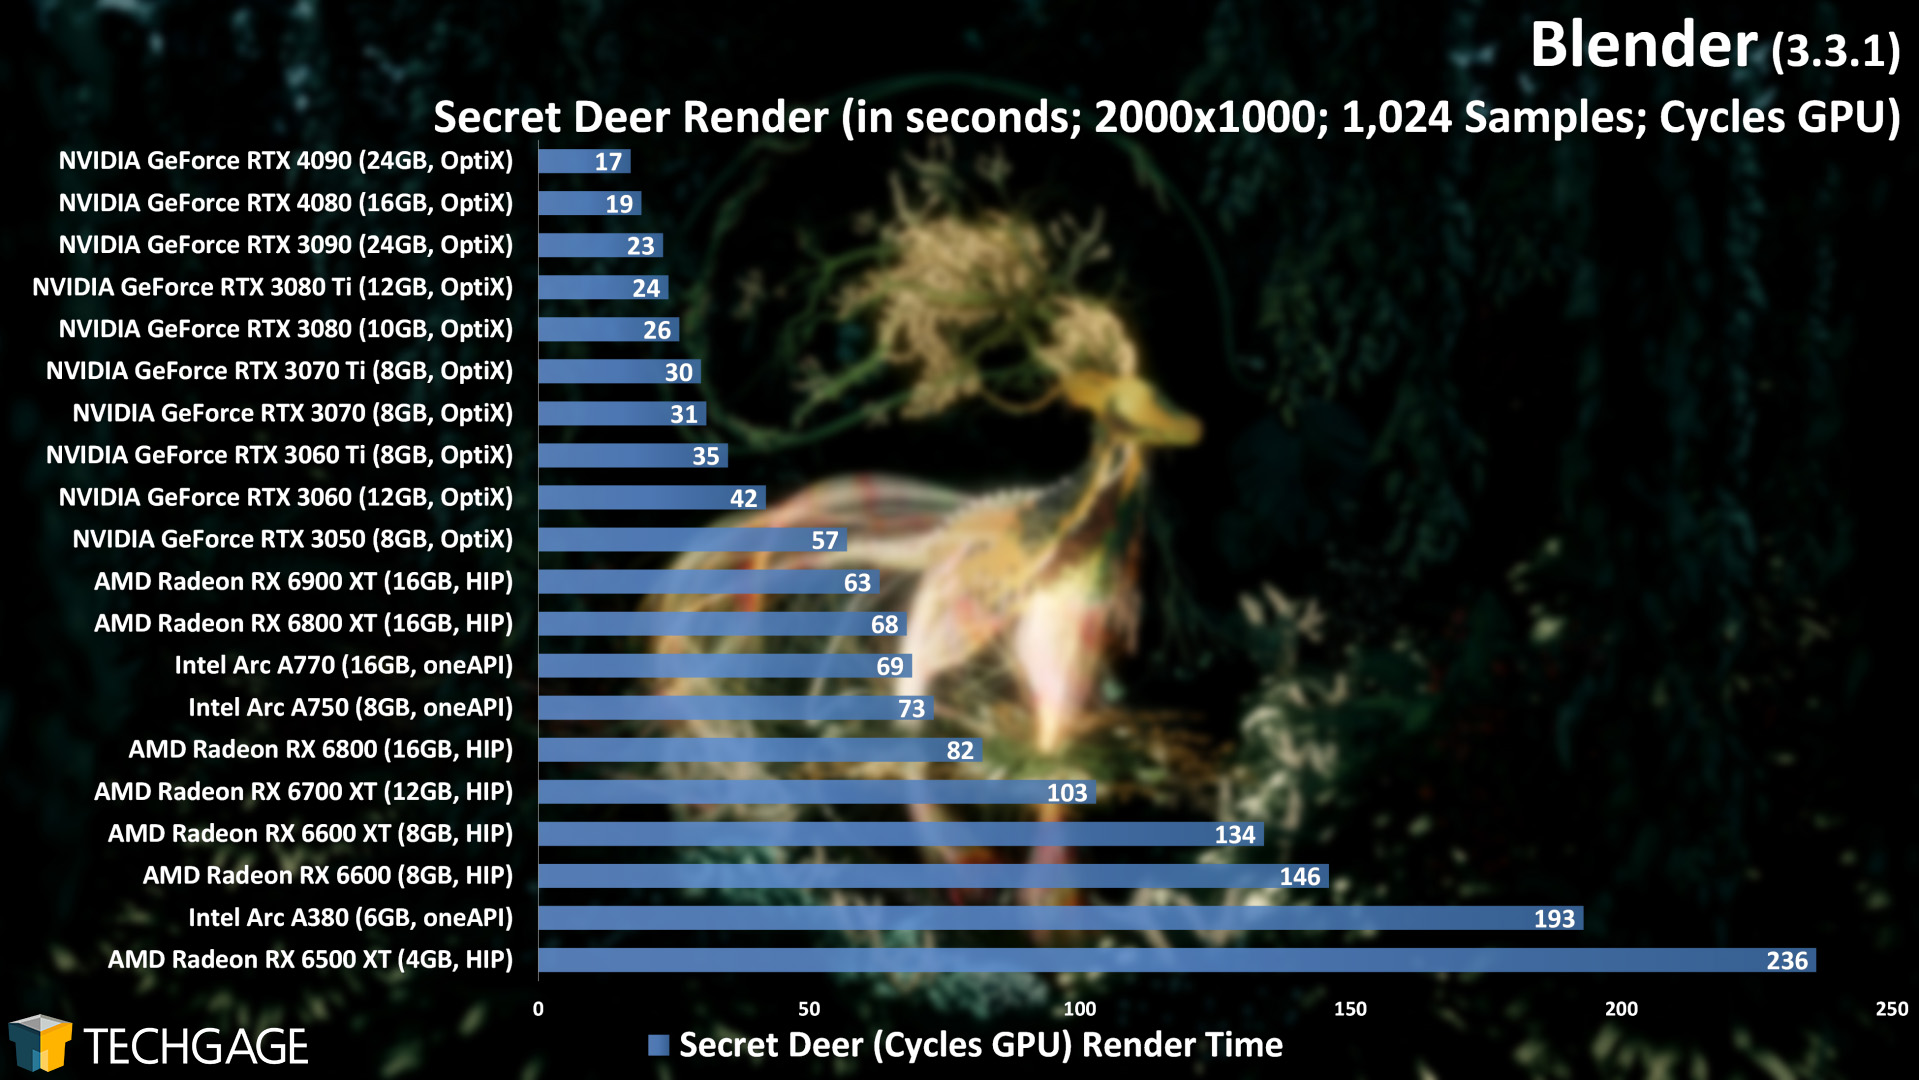 Blender 3.3 - Cycles GPU Render Performance (Secret Deer) (NVIDIA GeForce RTX 4080)